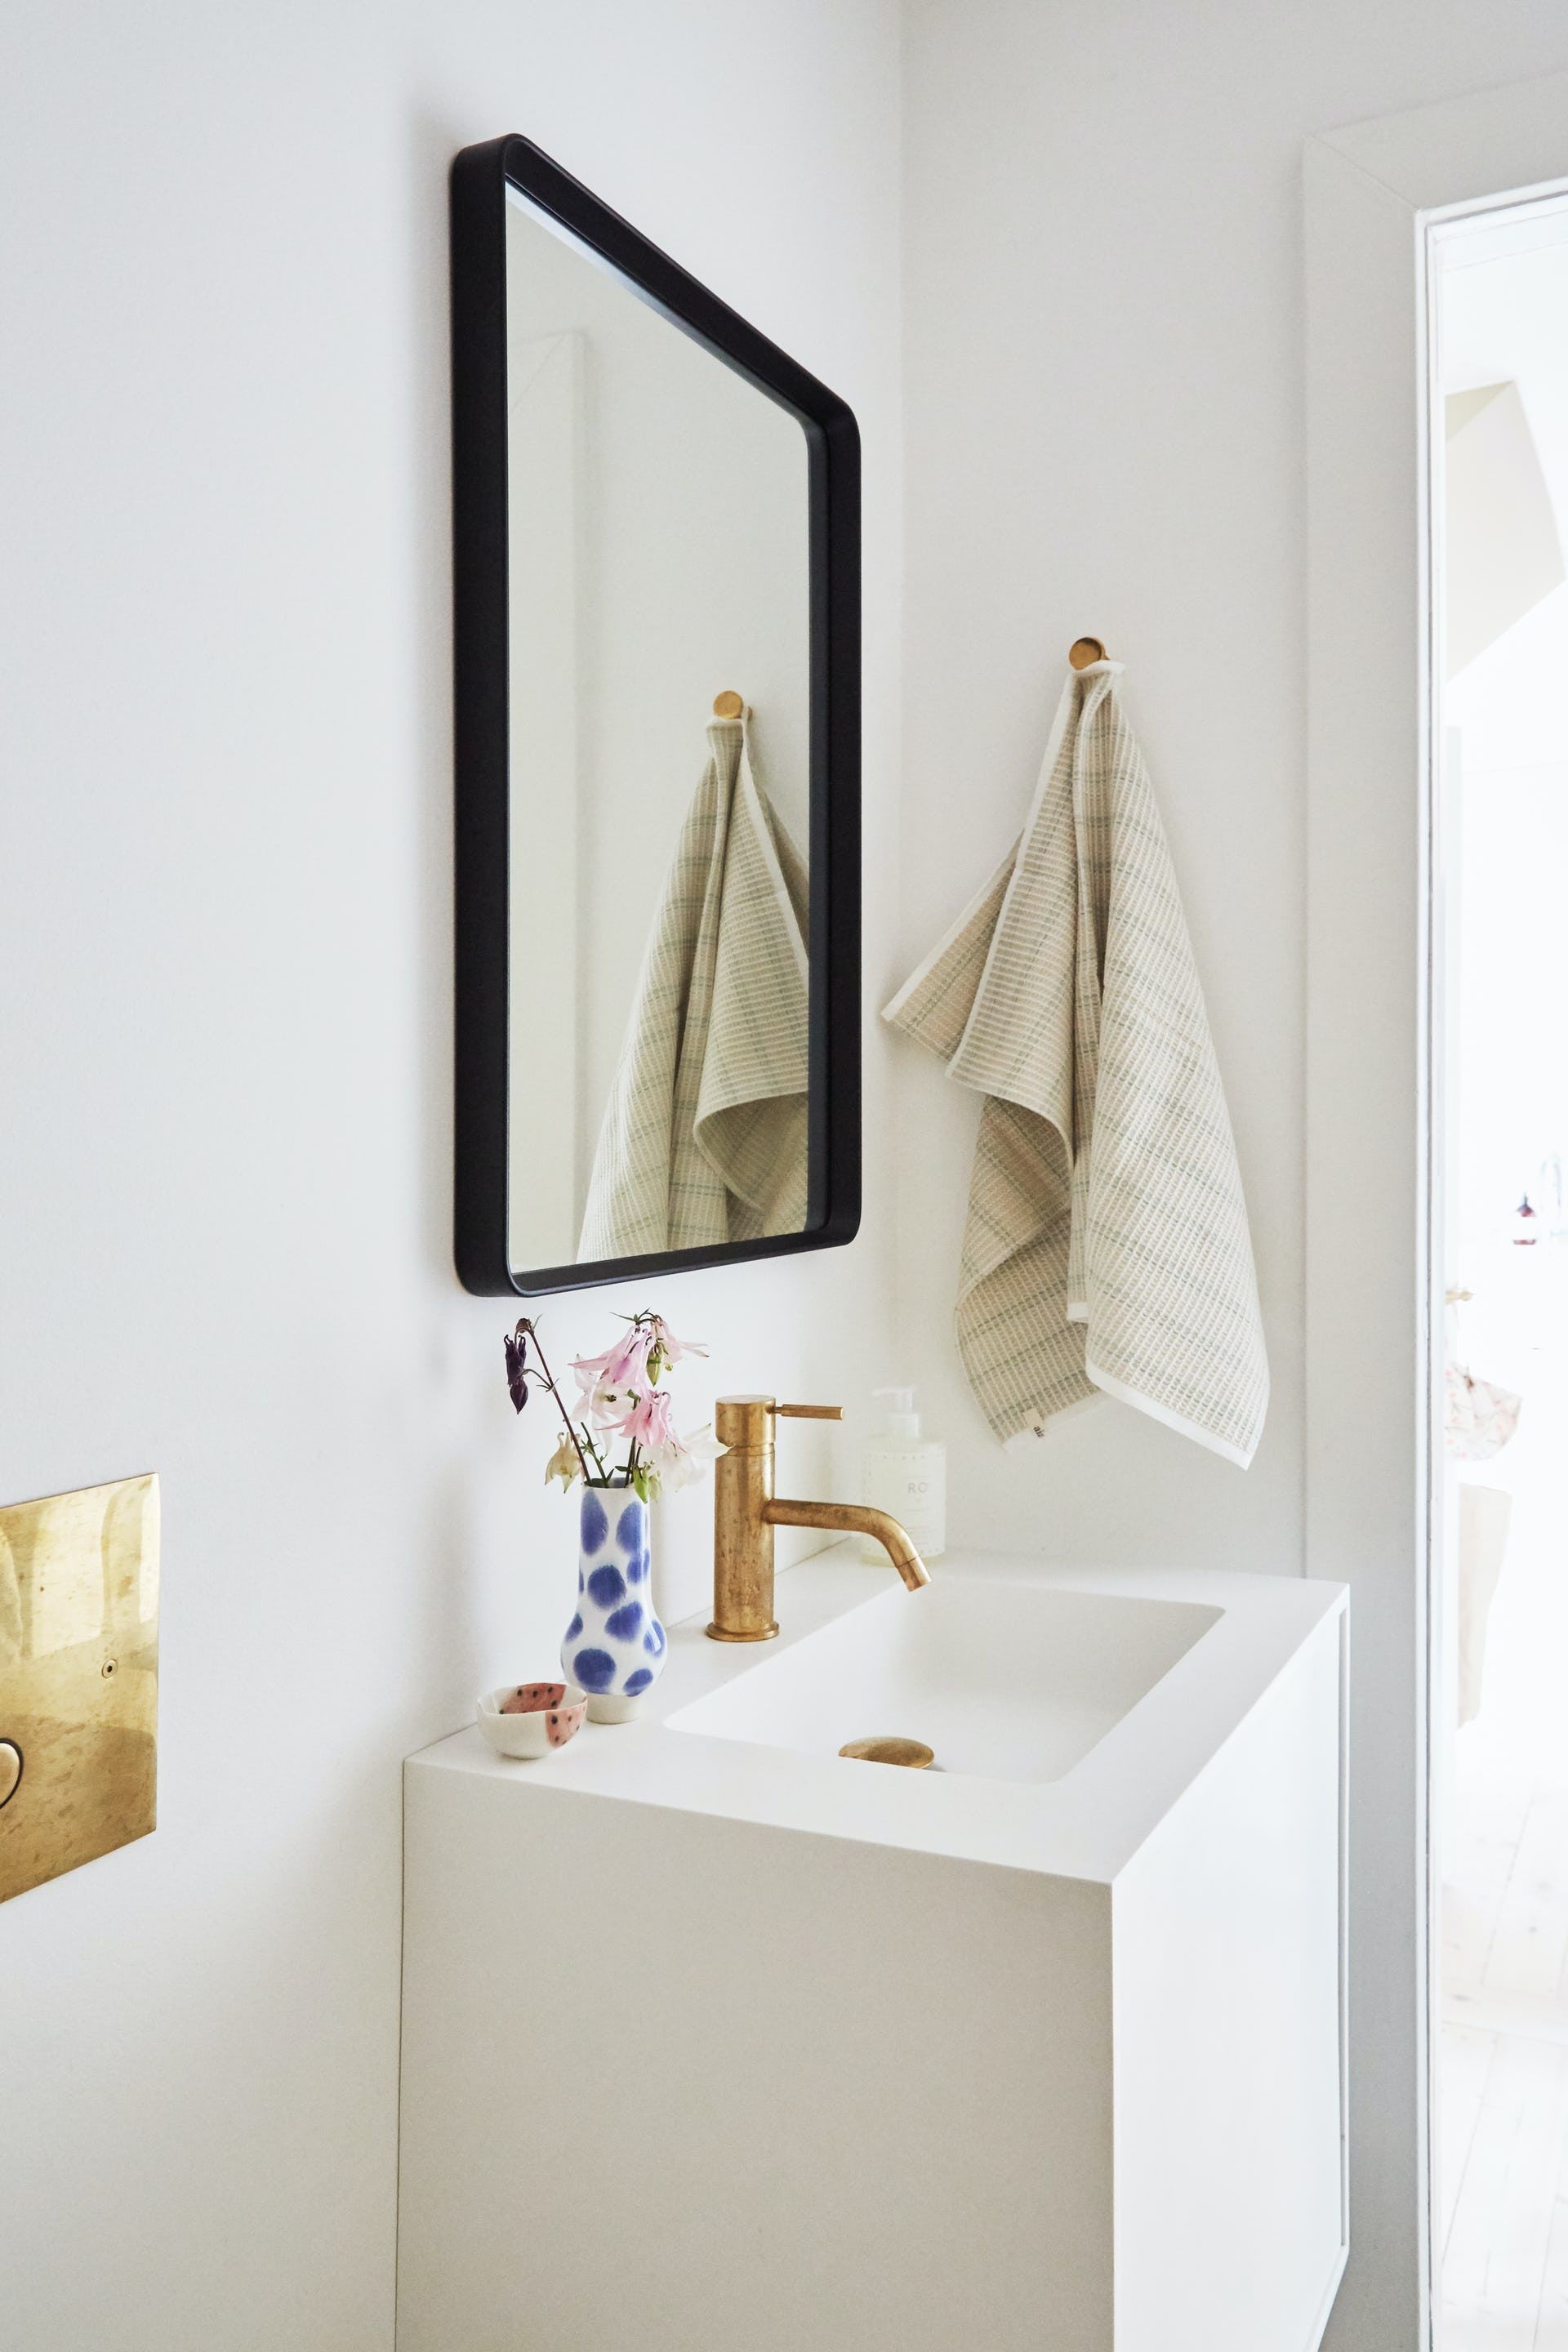 Lọ hoa sứ duyên dáng trên bồn rửa, tấm gương soi đơn giản nhưng mang lại hiệu quả “cơi nới” không gian.